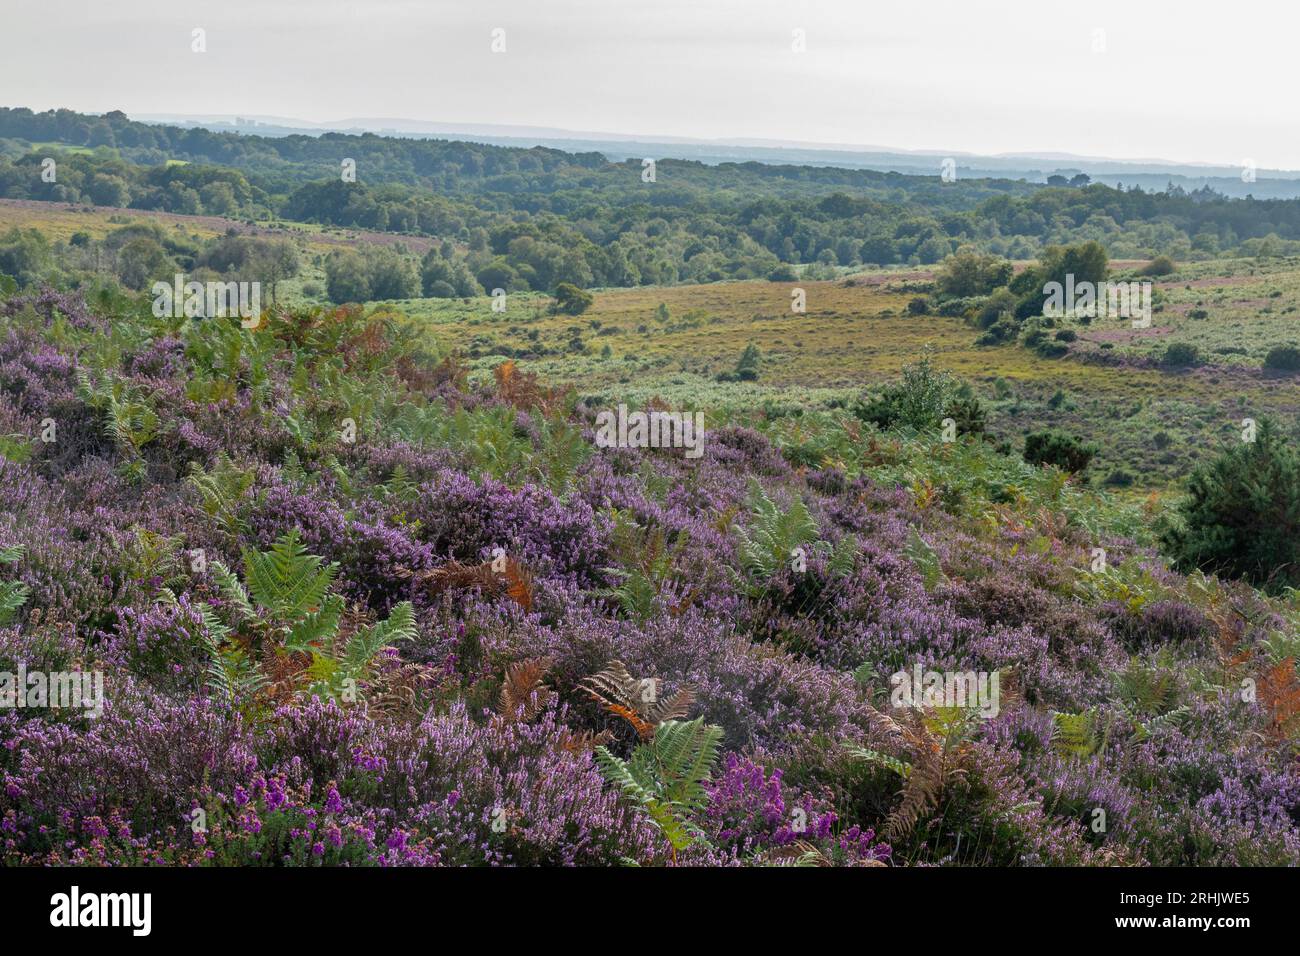 Paysage de bruyère des basses terres dans le parc national de New Forest, Hampshire, Angleterre, Royaume-Uni, avec floraison de bruyère violet rose en été Banque D'Images